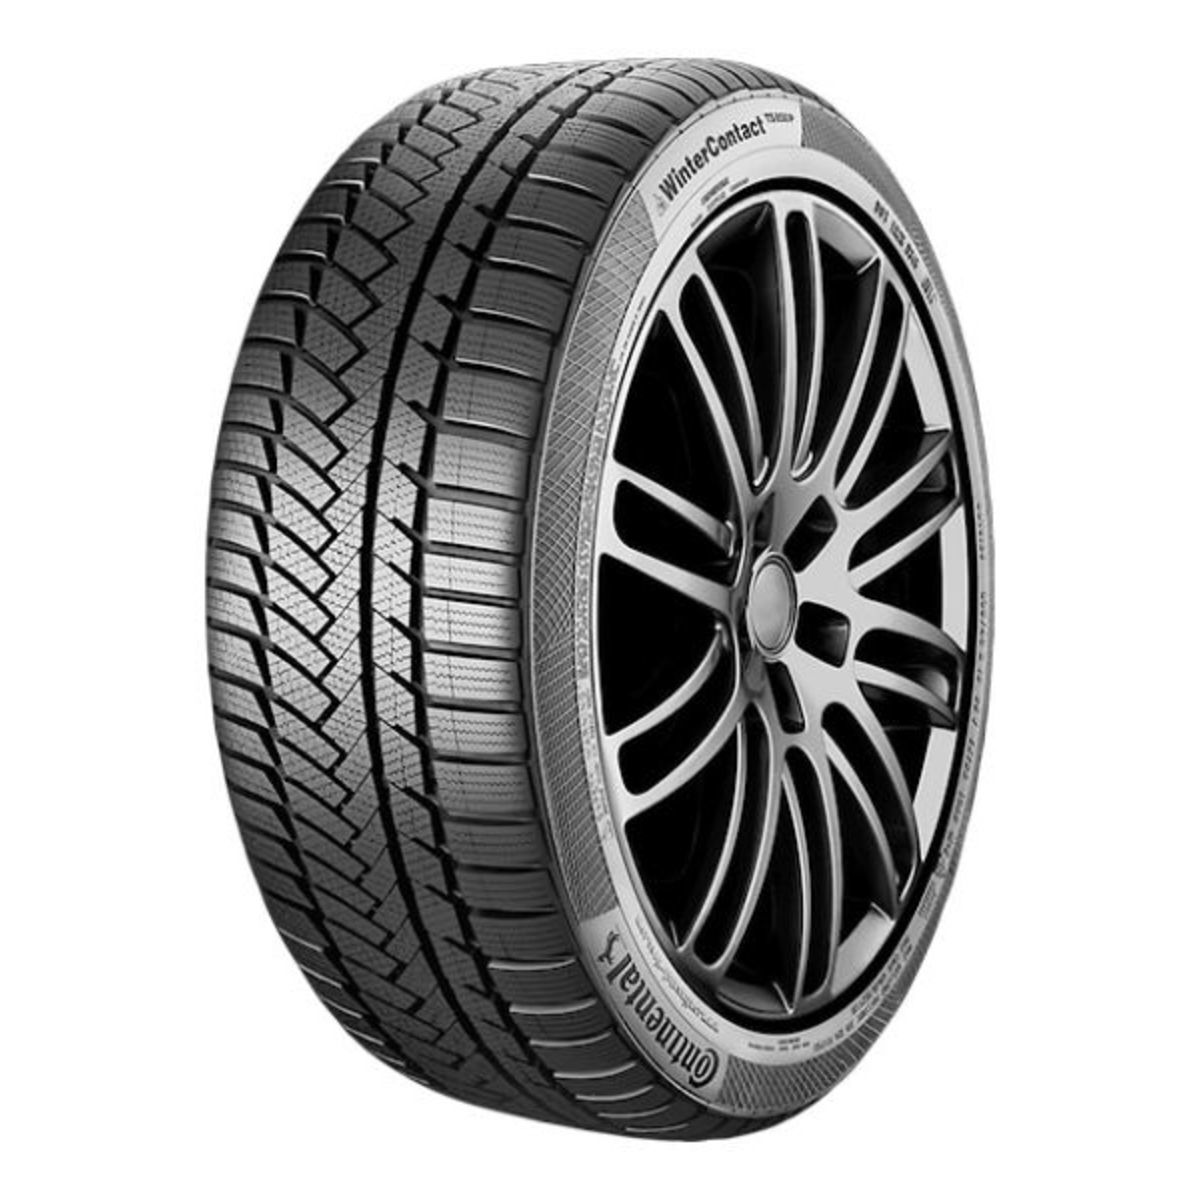 Neumáticos de invierno CONTINENTAL WinterContact TS 850 P 205/40R17 XL 84H